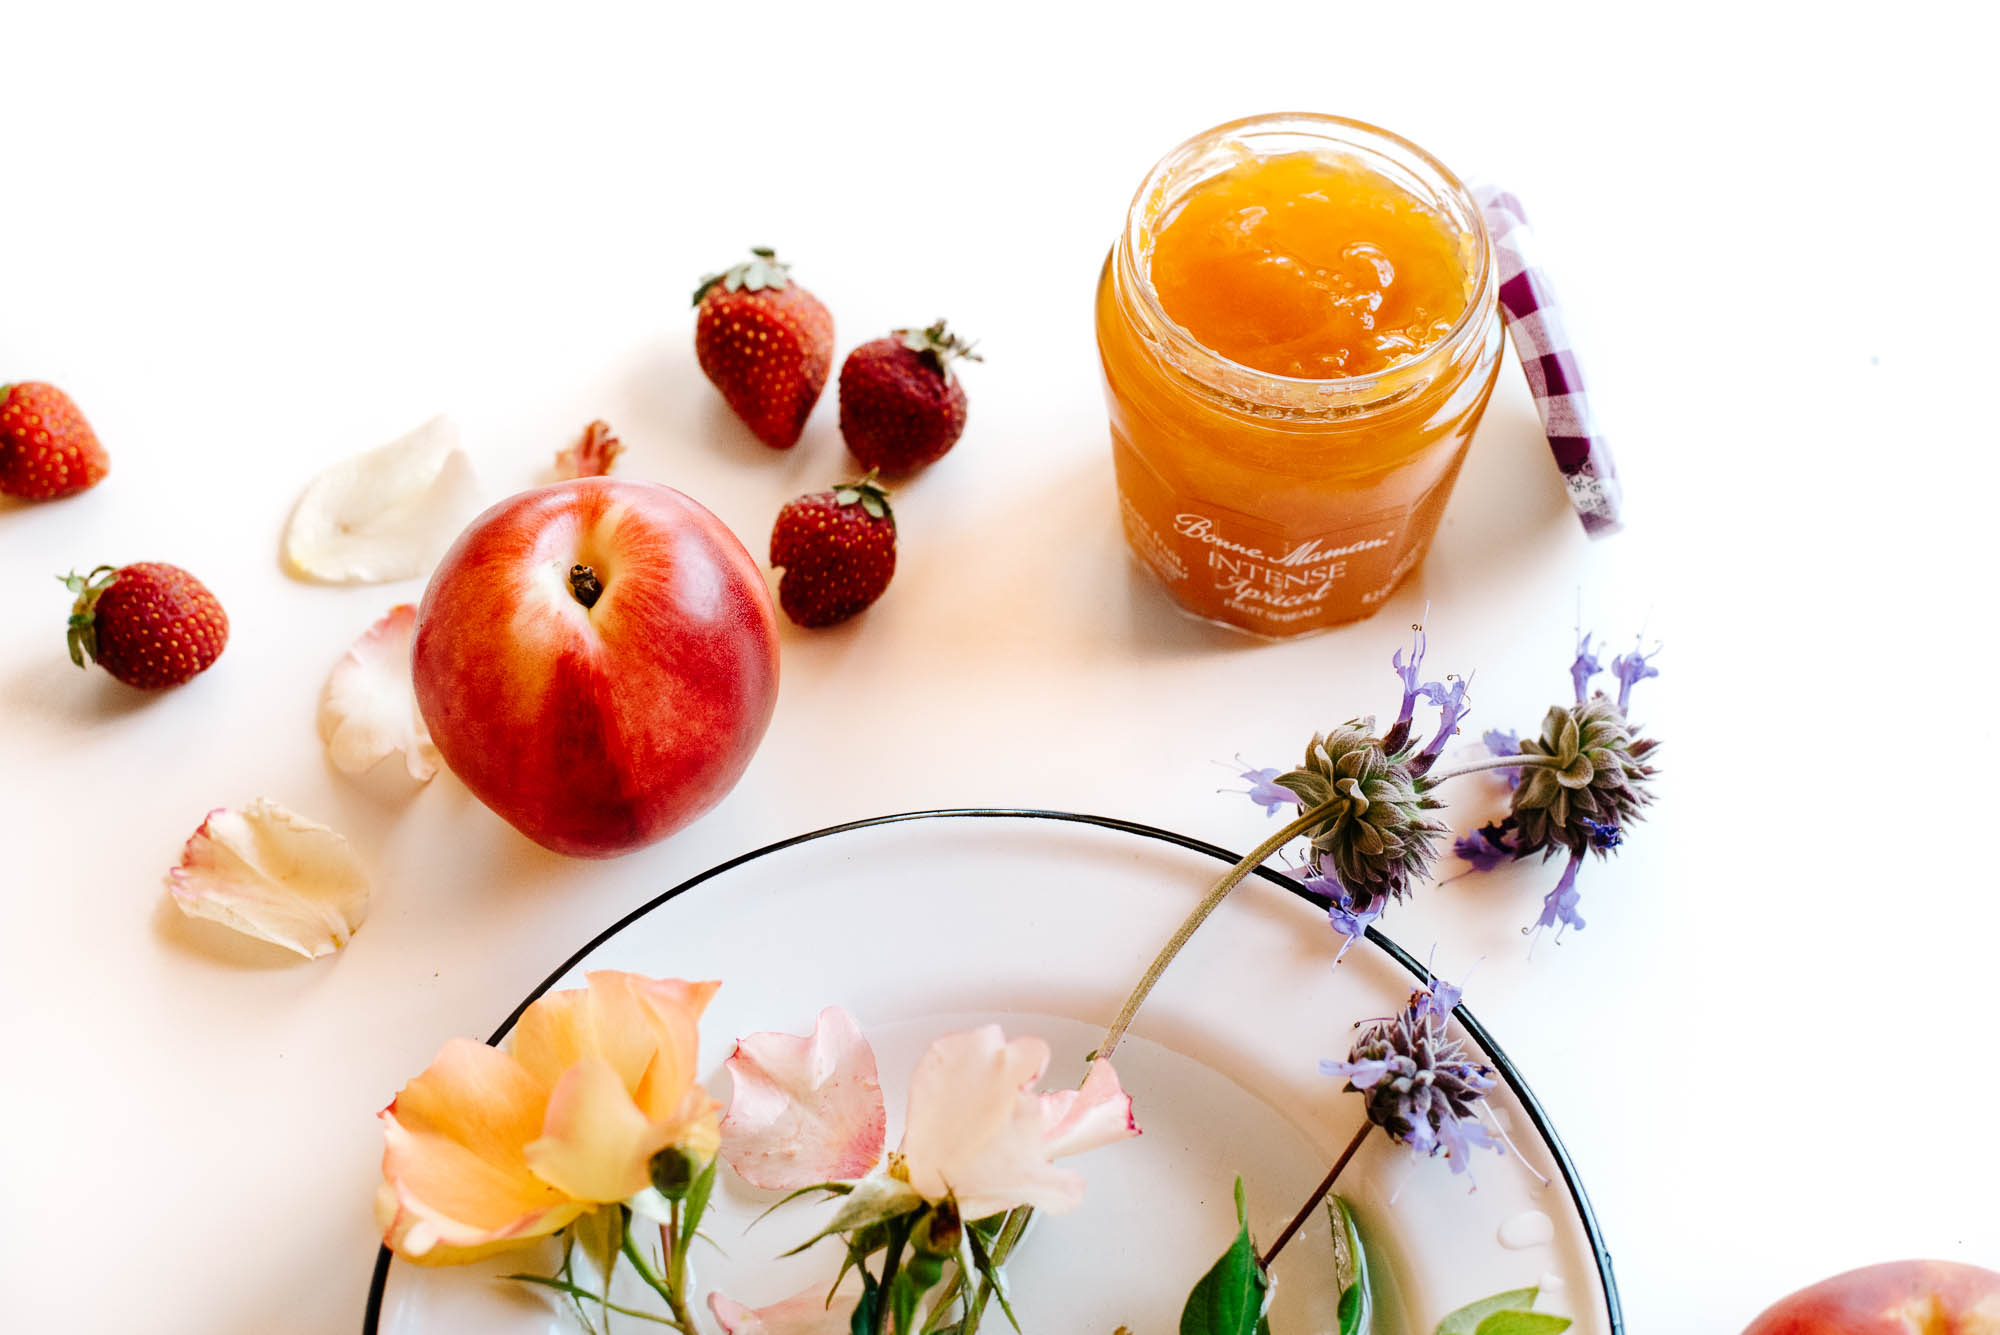 Apricot Rose Cream & Summer Fruit Fantasia.